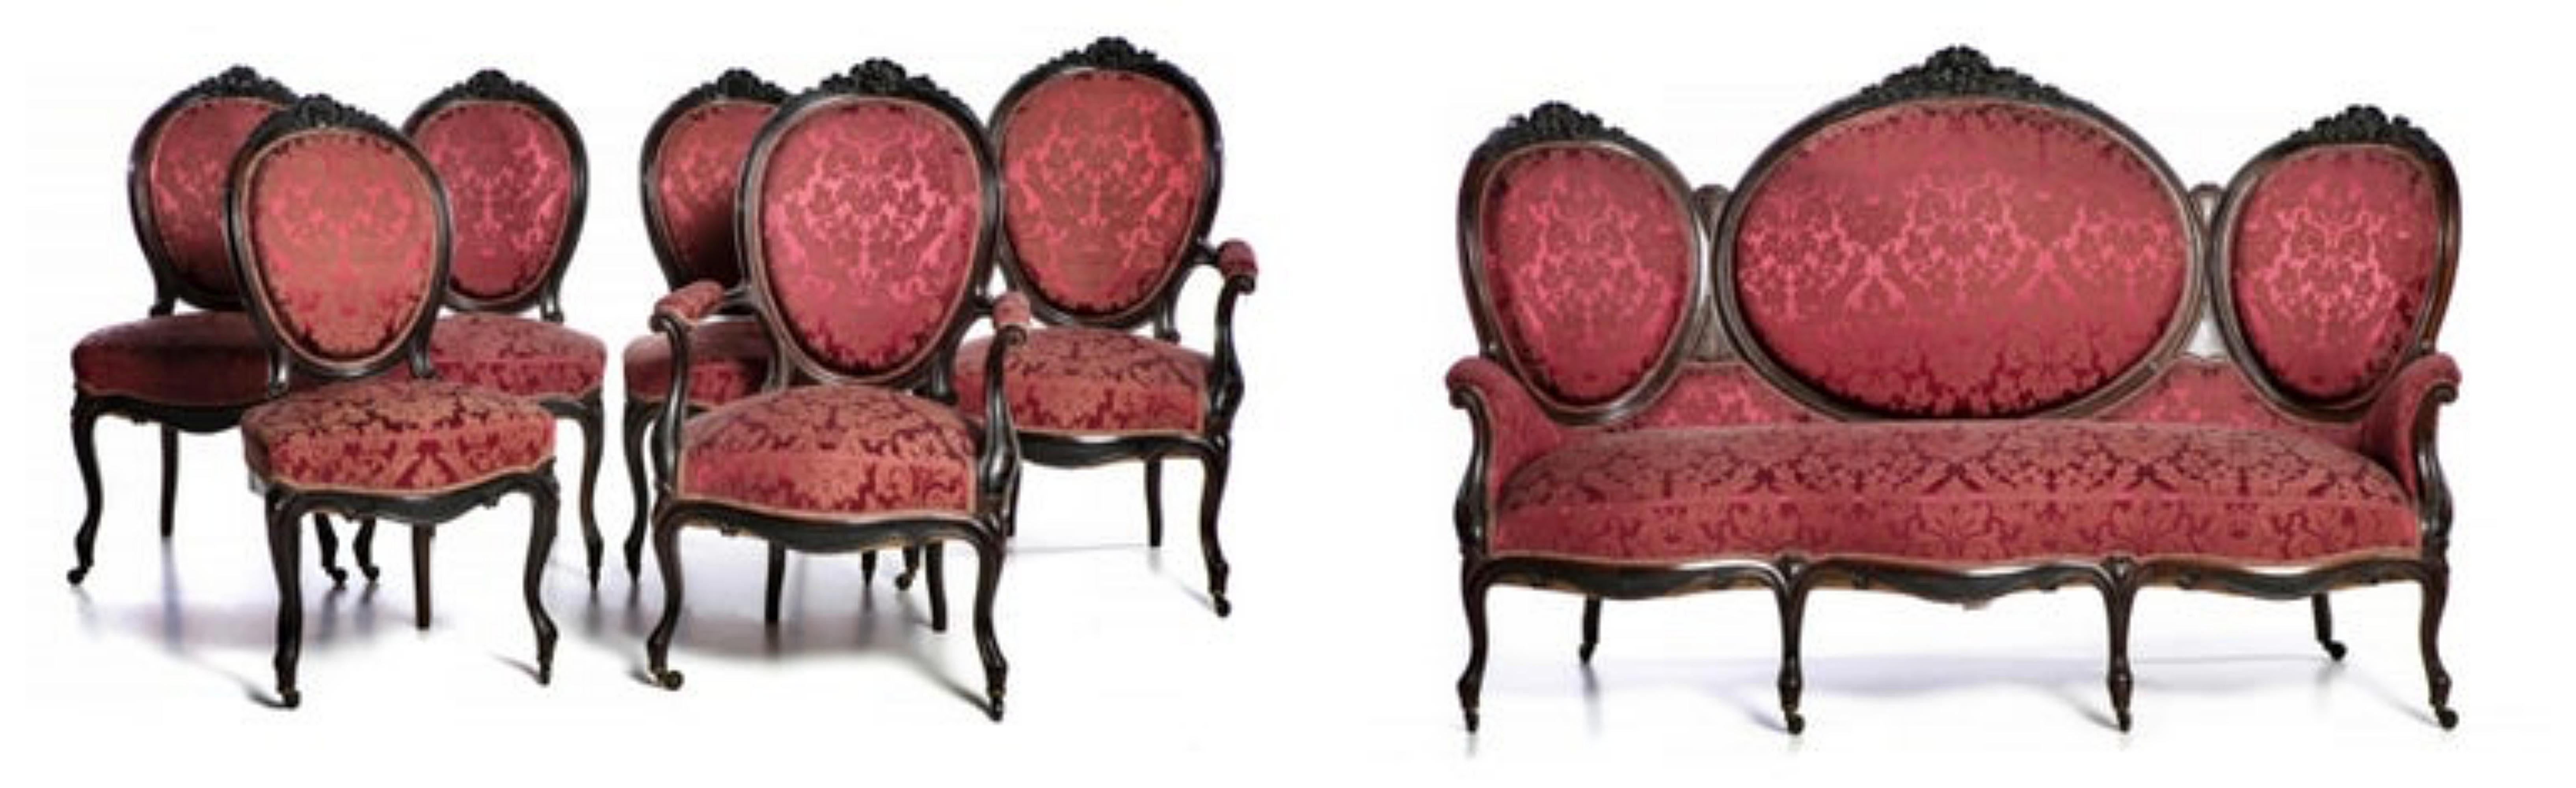 Canape-Set zwei Sessel und vier Stühle.

Portugiesisches 19. Jahrhundert.
romantischer Stil, aus Palisanderholz.
Sitz und Rückenlehne aus Damast.
Abmessungen: (Canapé) 120 x 178 x 56 cm.
Guter Zustand.